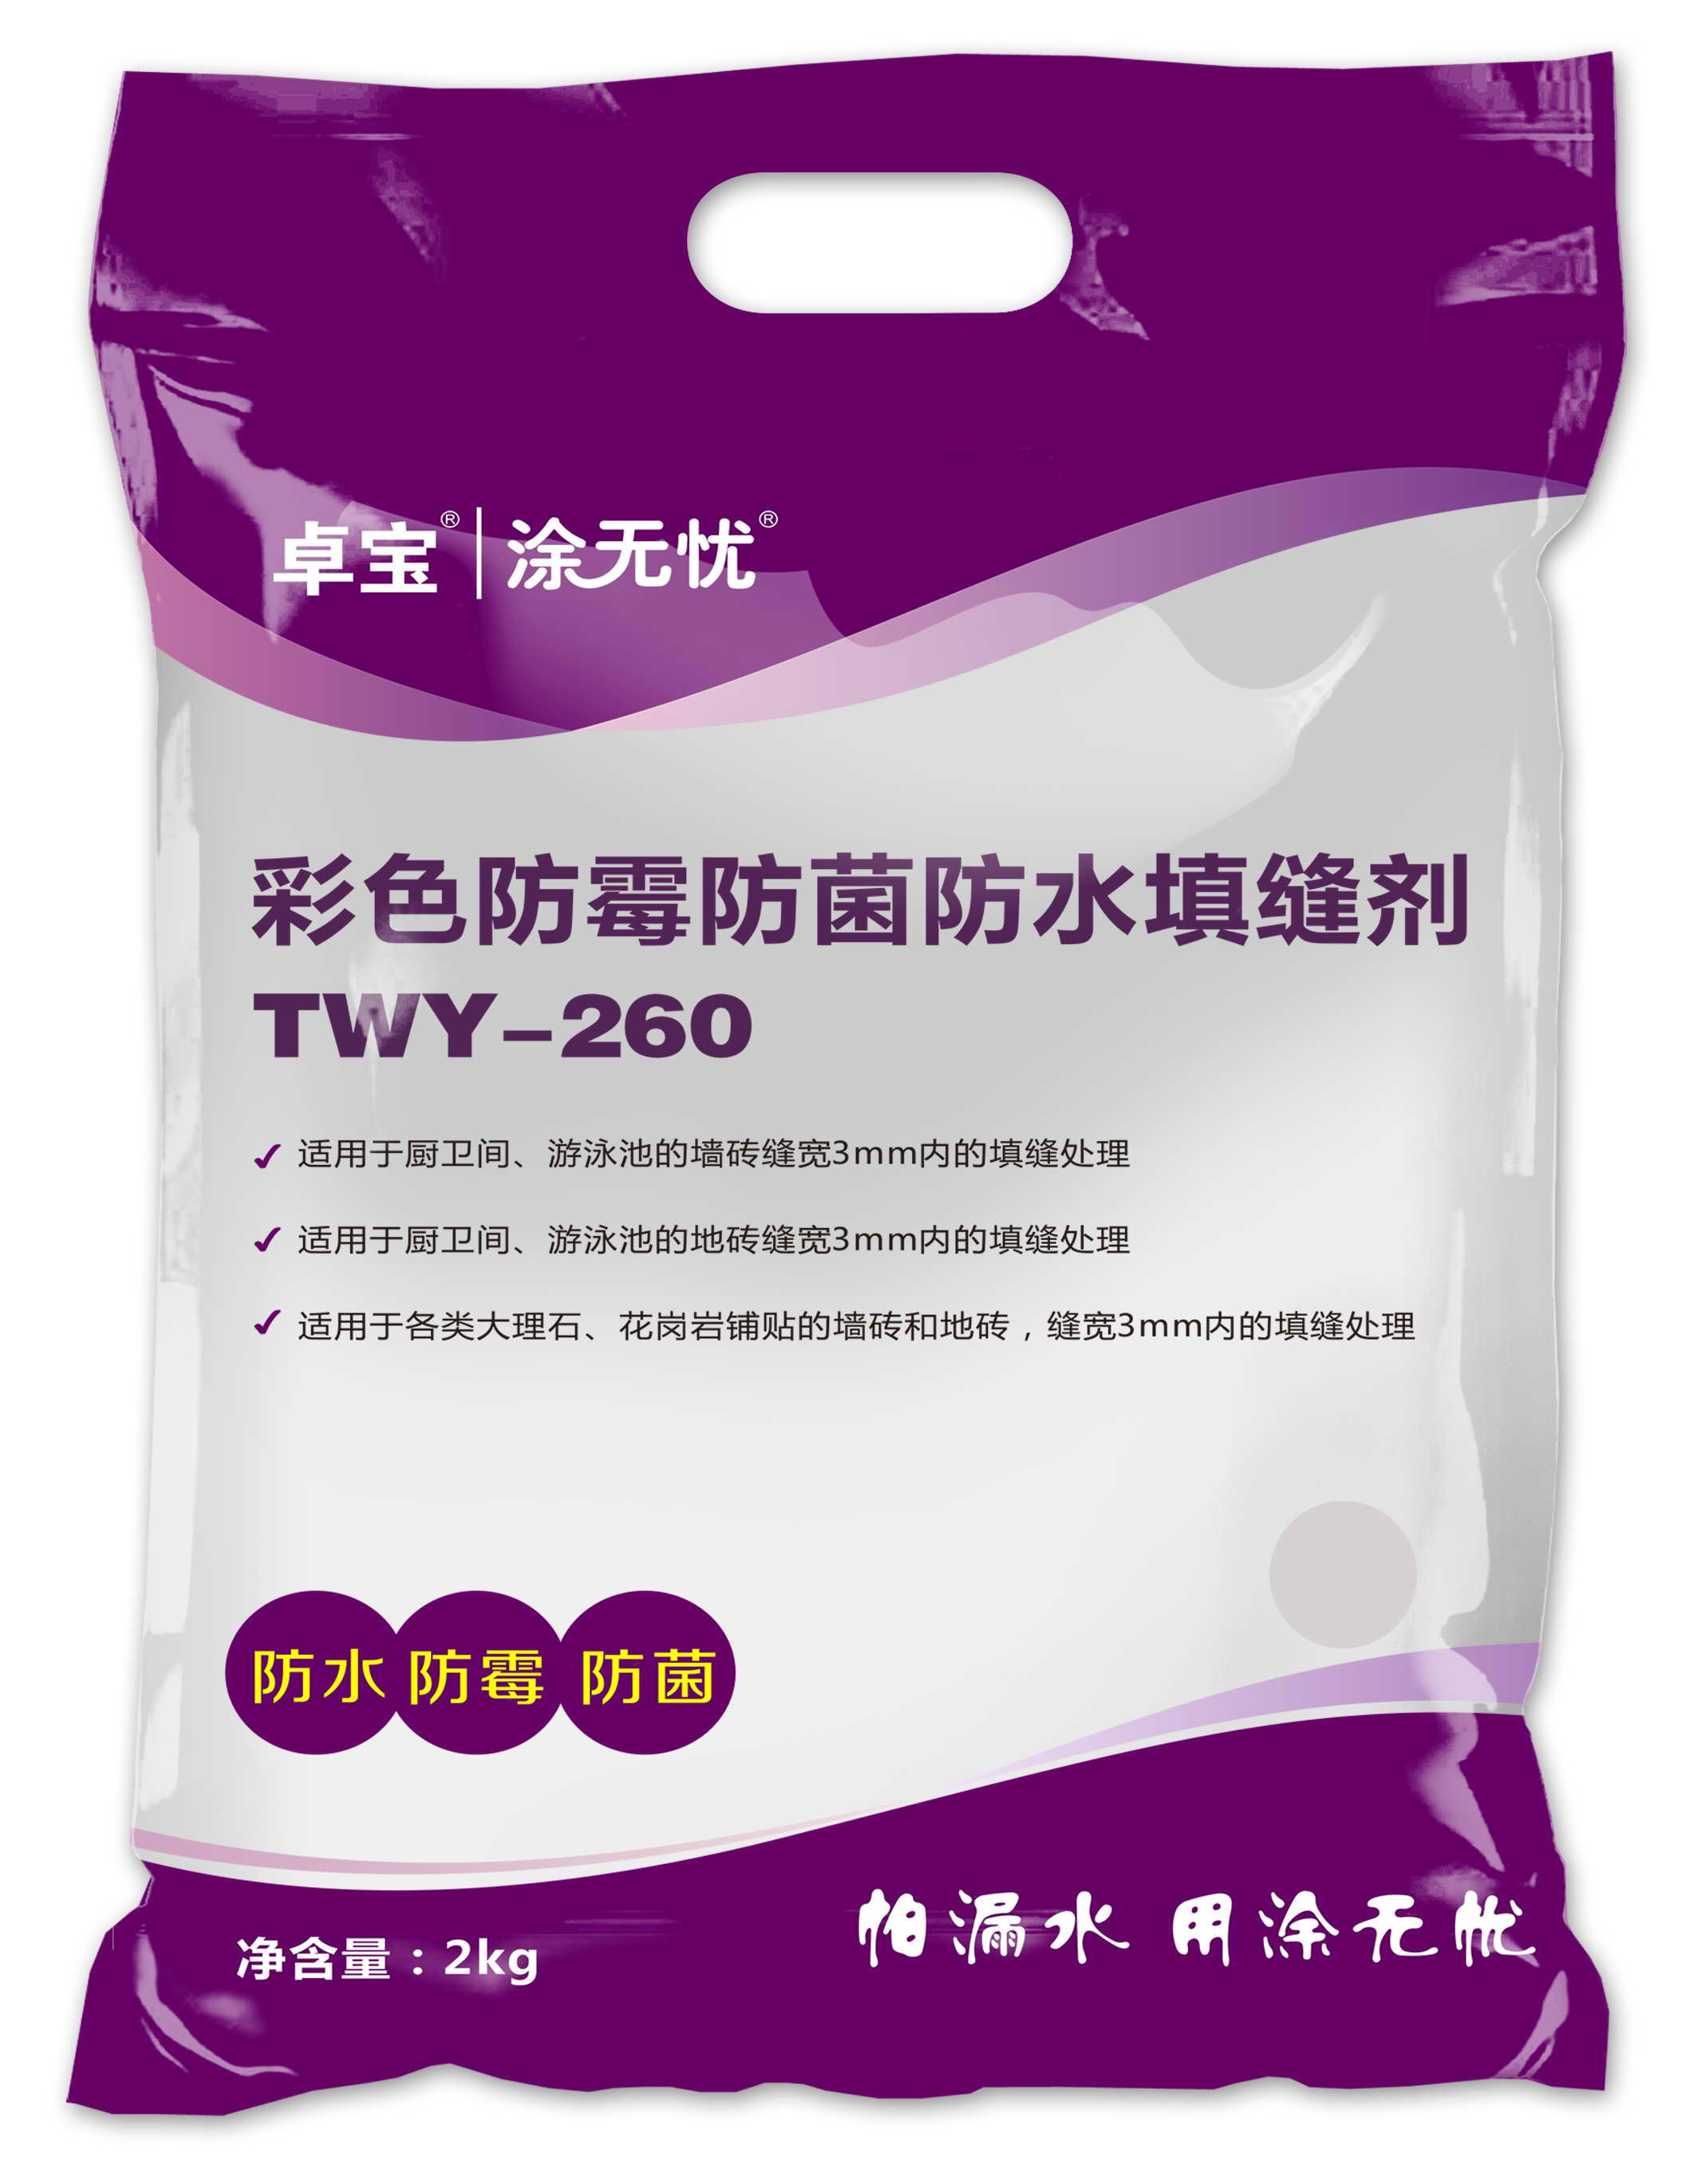 TWY-260彩色防霉防菌防水填缝剂